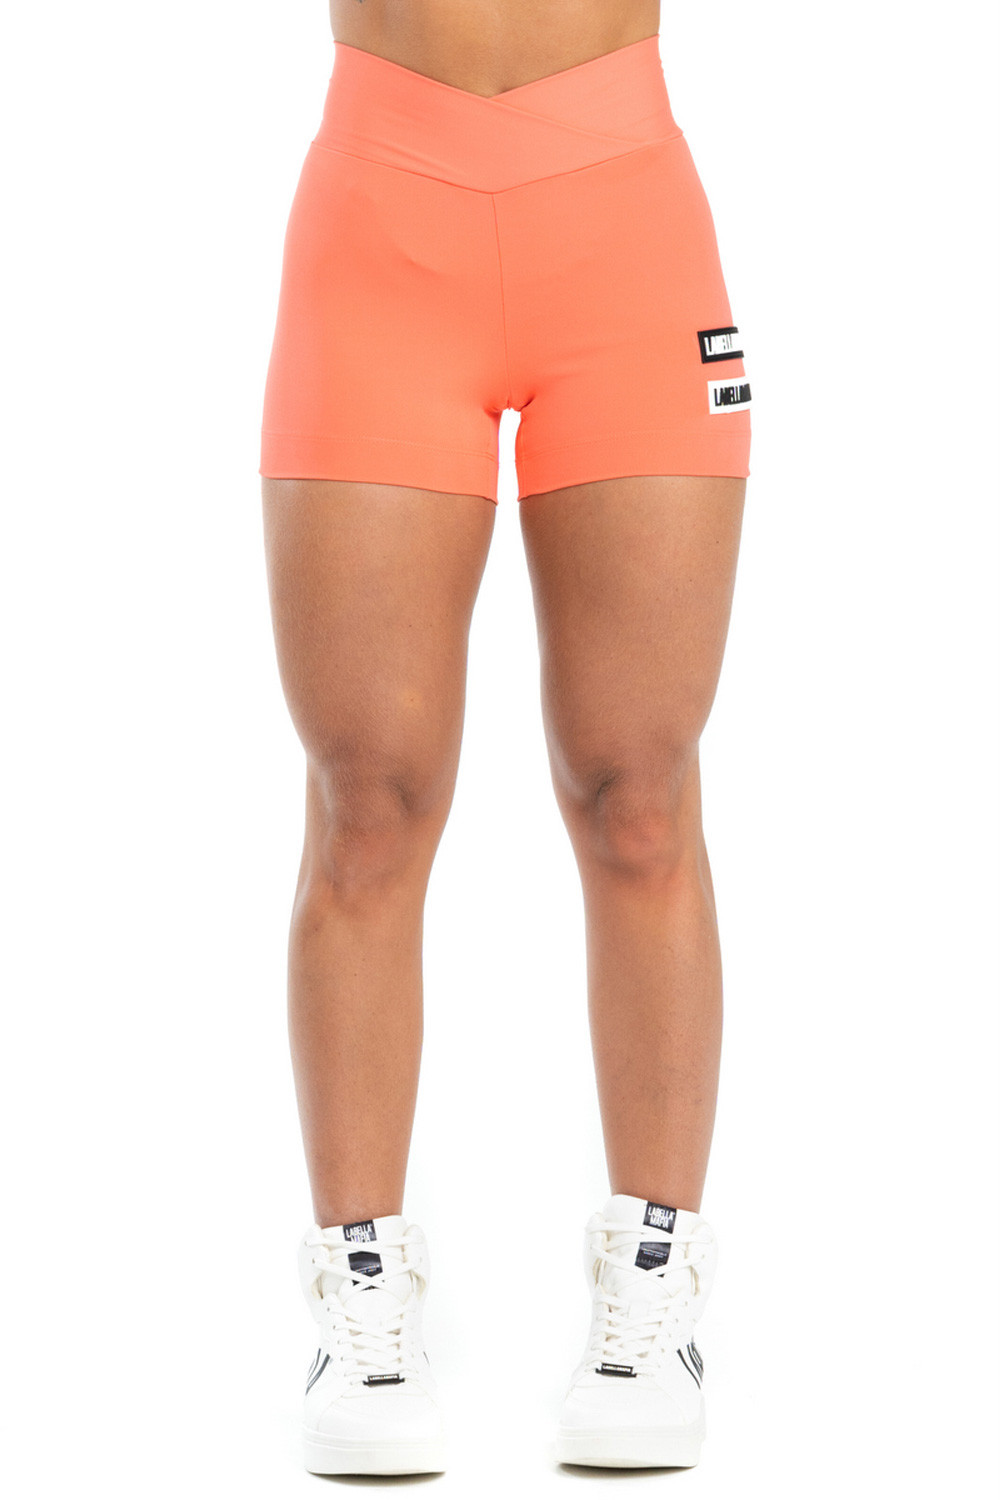 Labellamafia Go On Coral Shorts